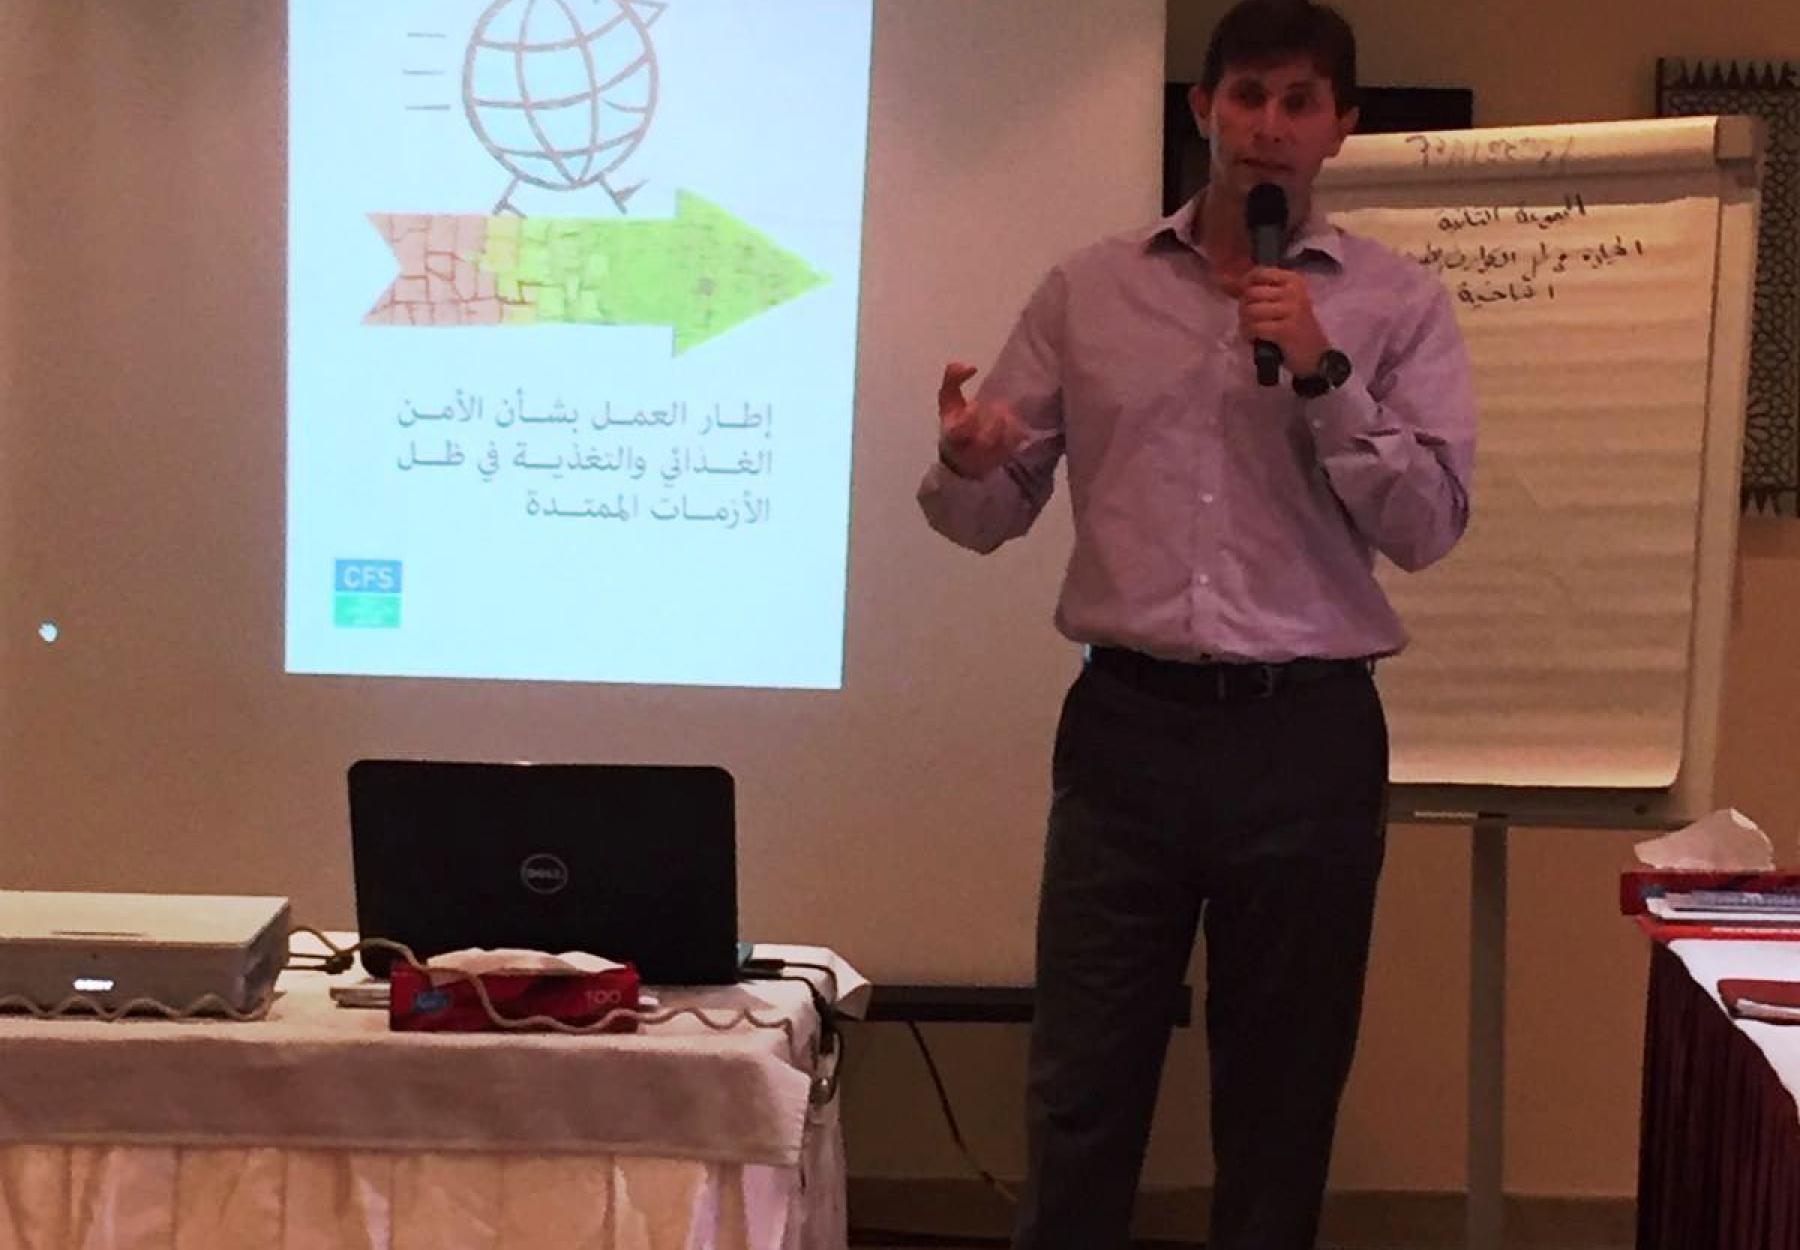 العربية تقود ورشة عمل حول الصراعات في منتدى الأرض في تونس